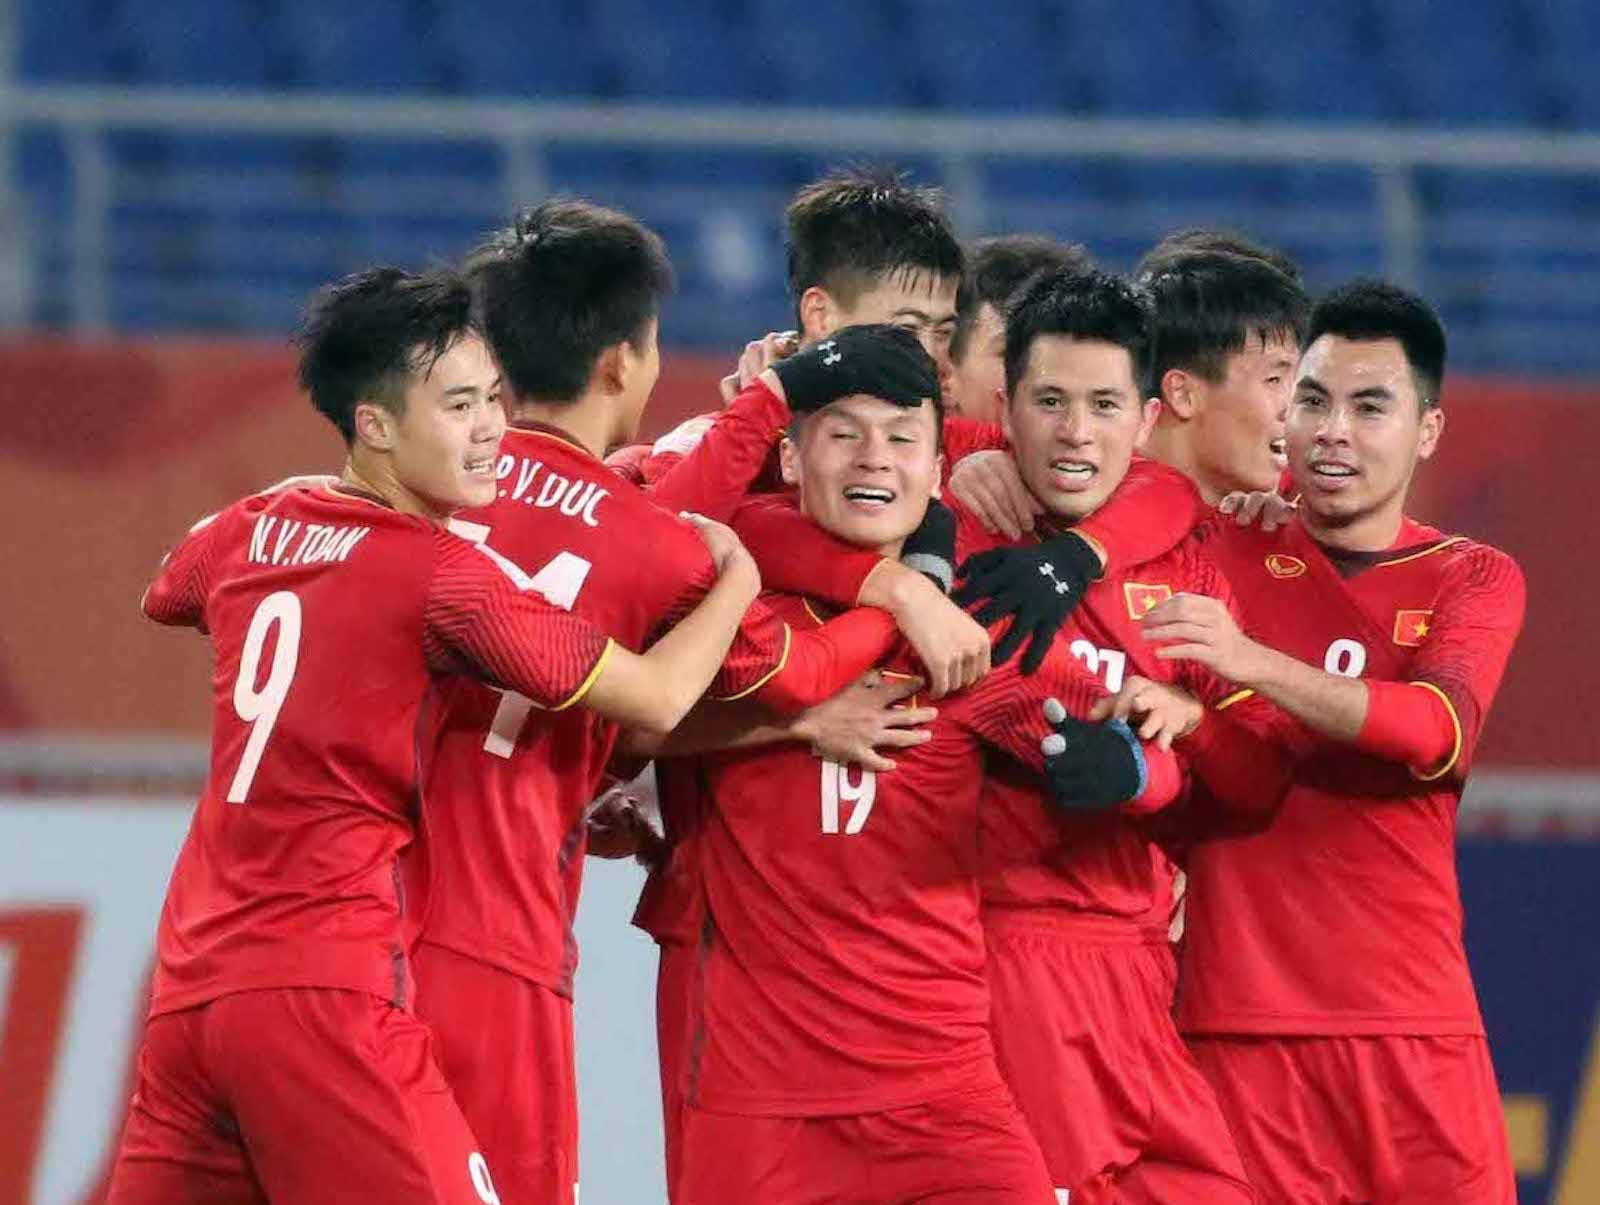 Nhận định bóng đá Việt Nam vs Australia vòng loại World Cup 2022 khu vực châu Á - 5